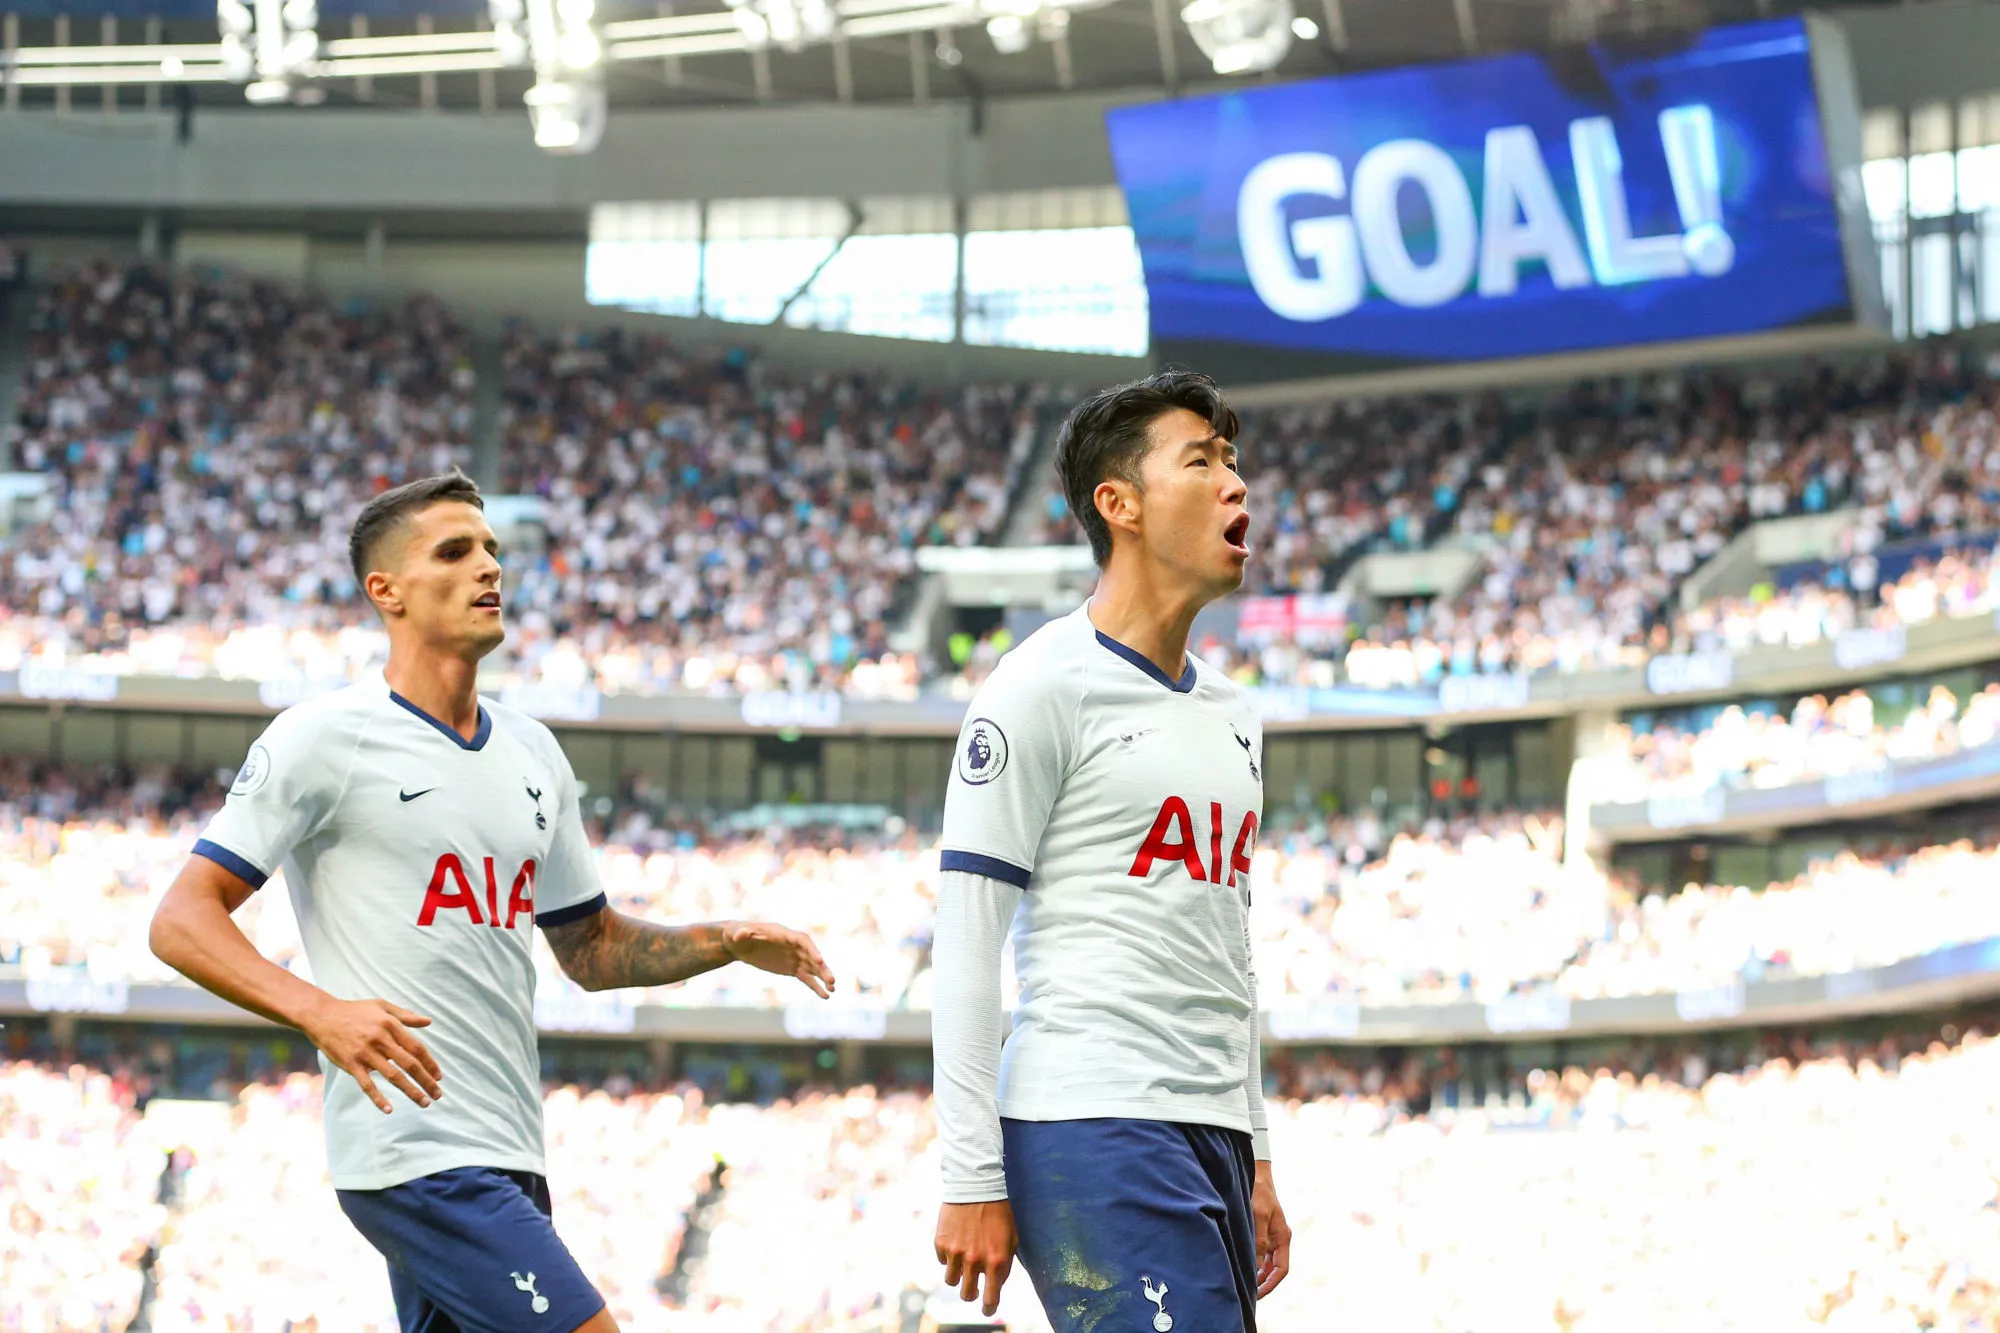 Pronostic Leyton Orient Tottenham : Analyse, cotes et prono du match de Carabao Cup